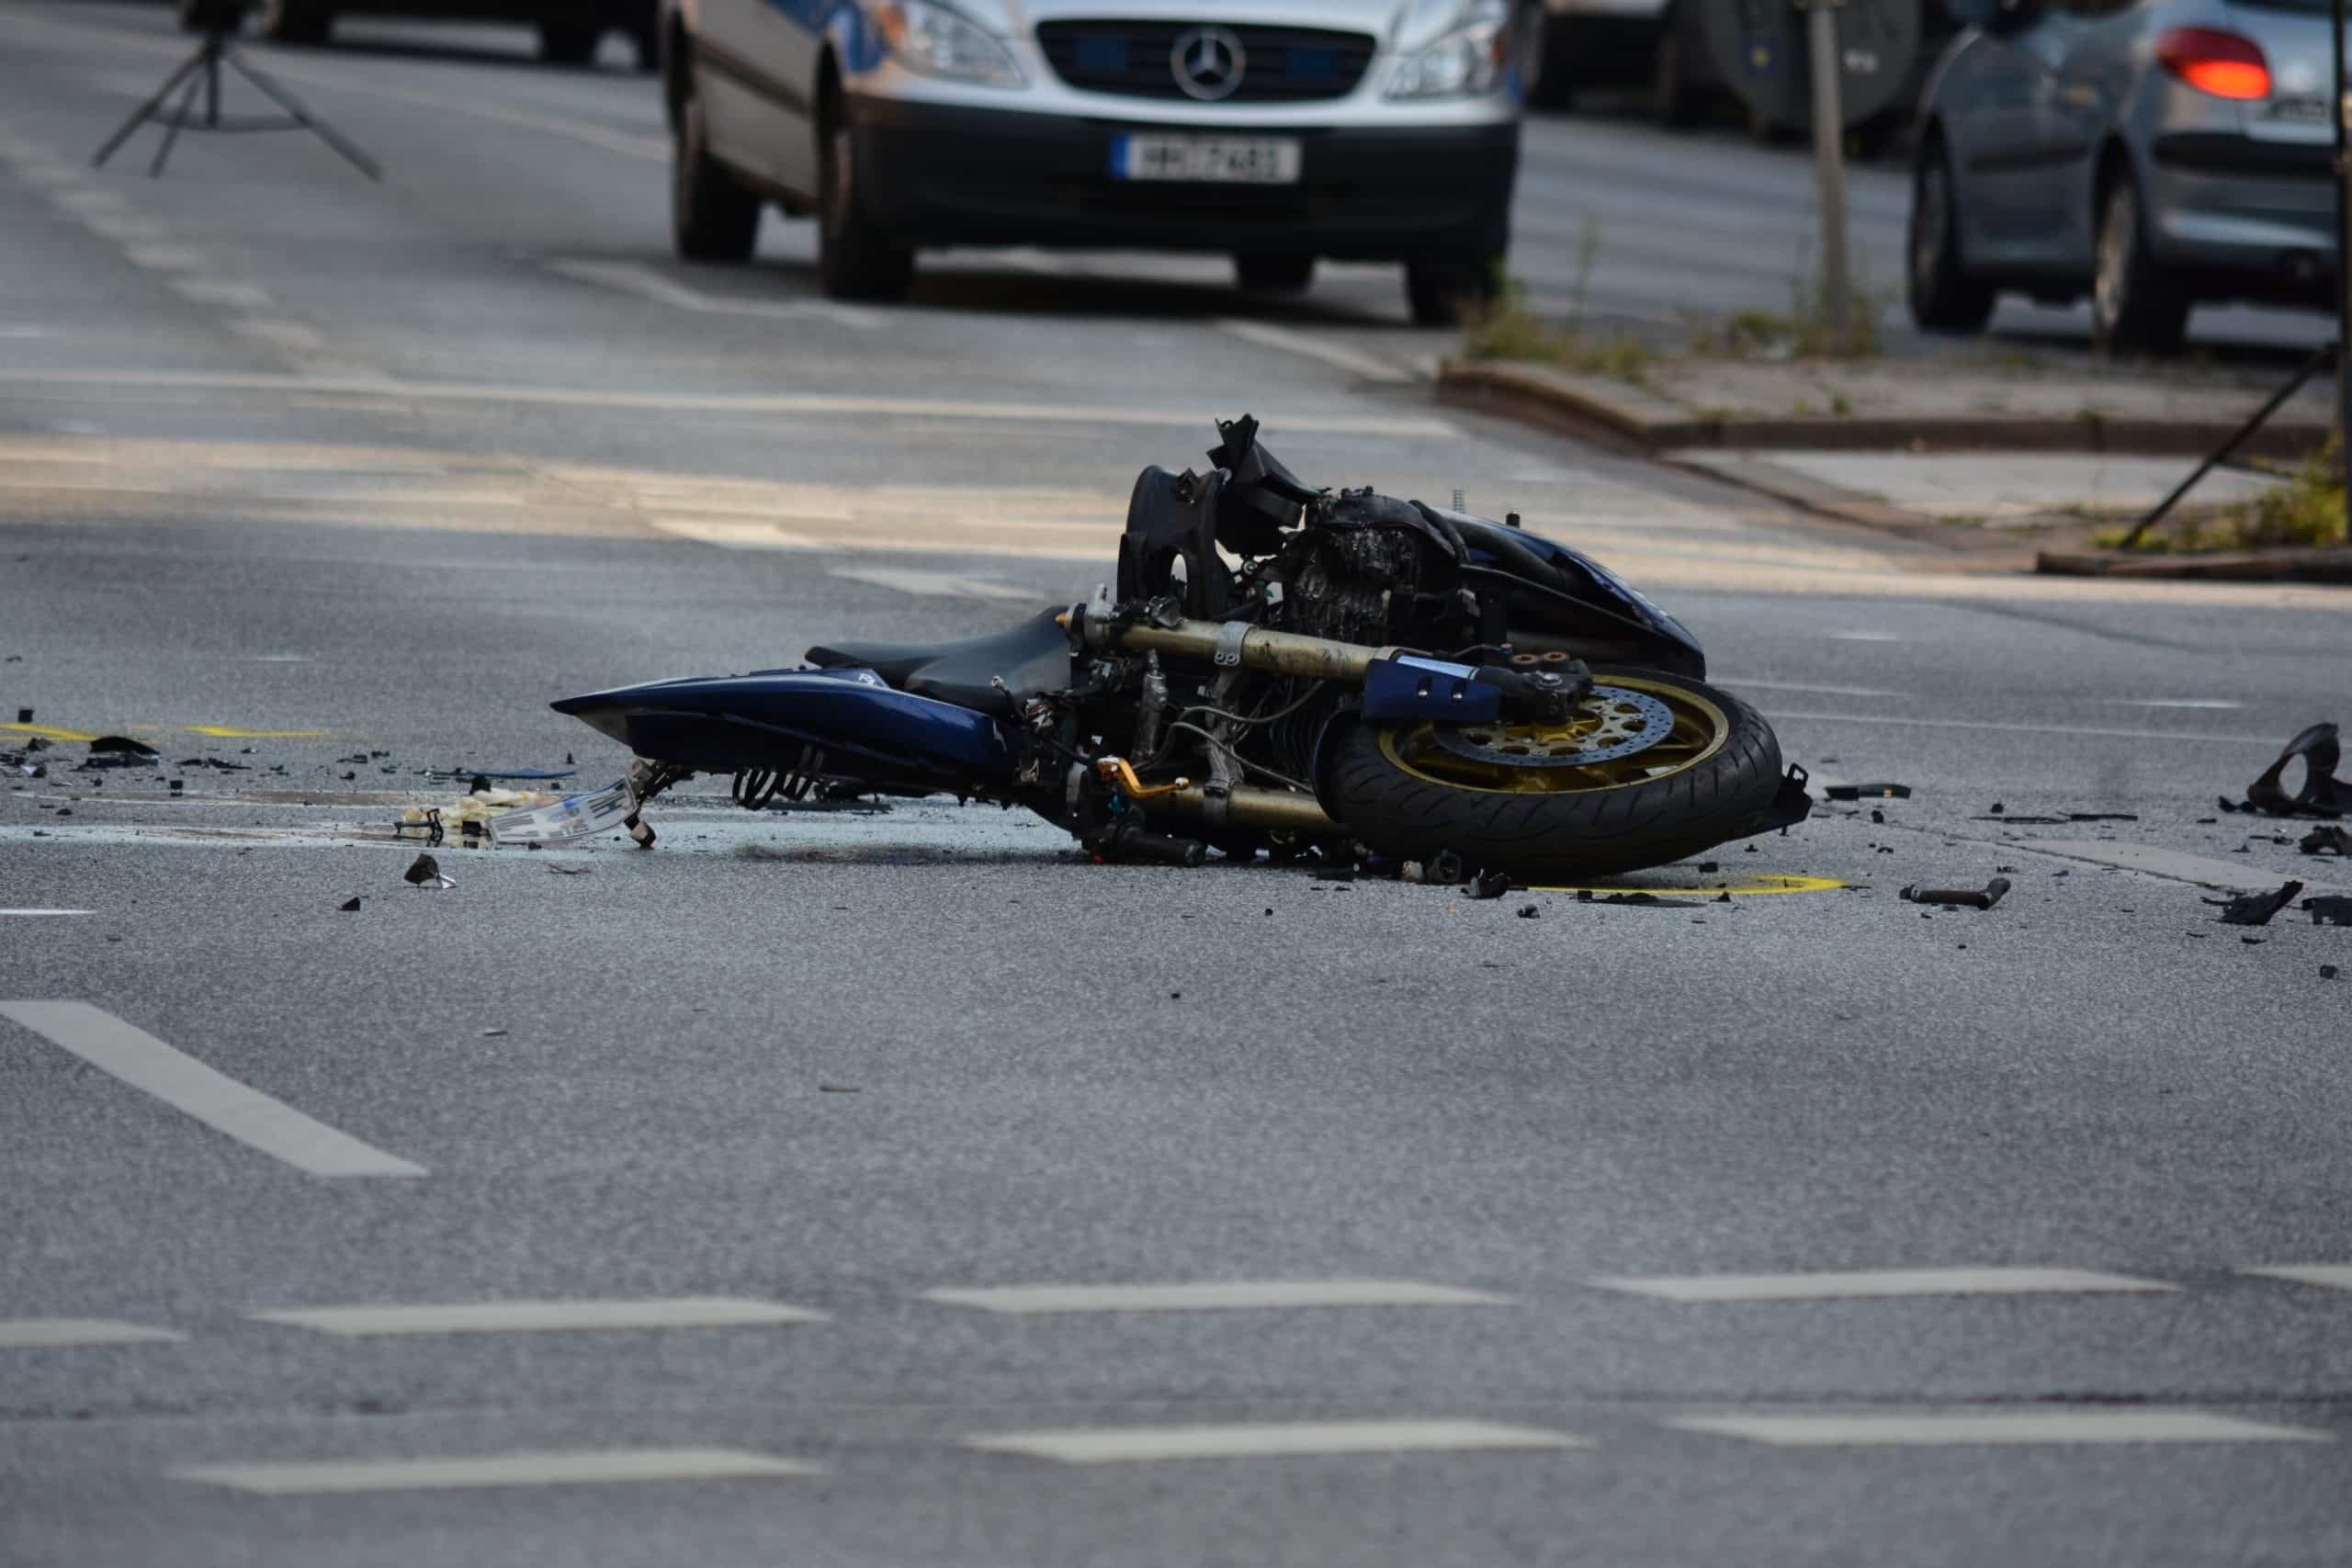 Motorrad Unfall auf der Straße